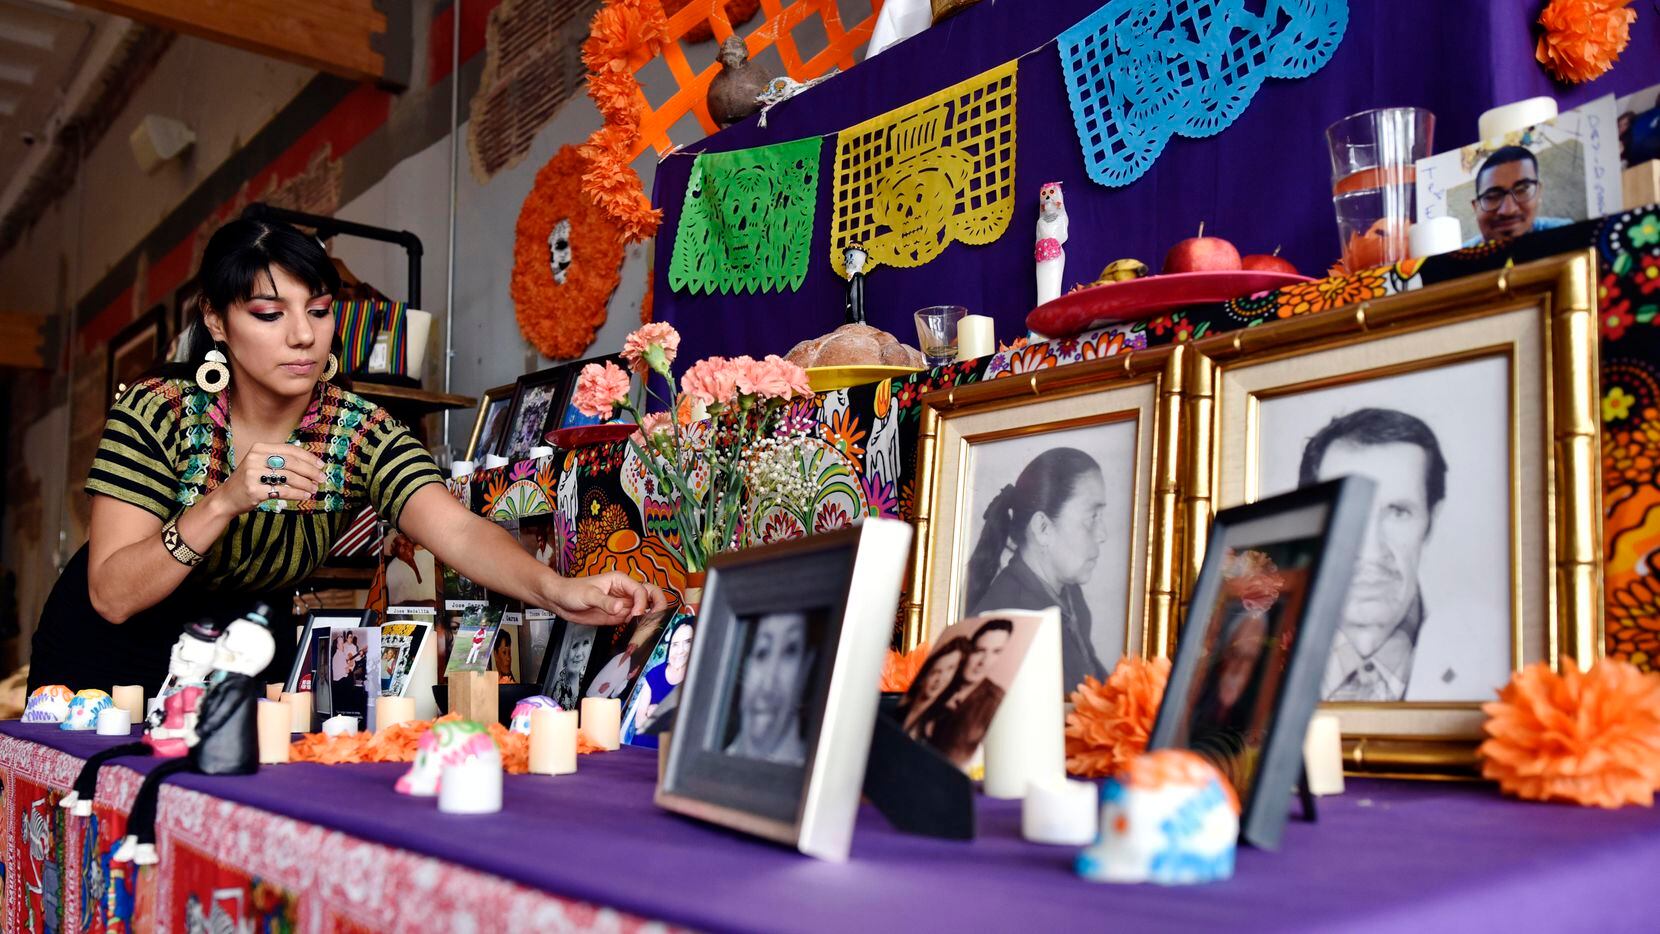 Dallas: Consulado de México tendrá Altar de Muertos al estilo de la región tzotzil  en Chiapas